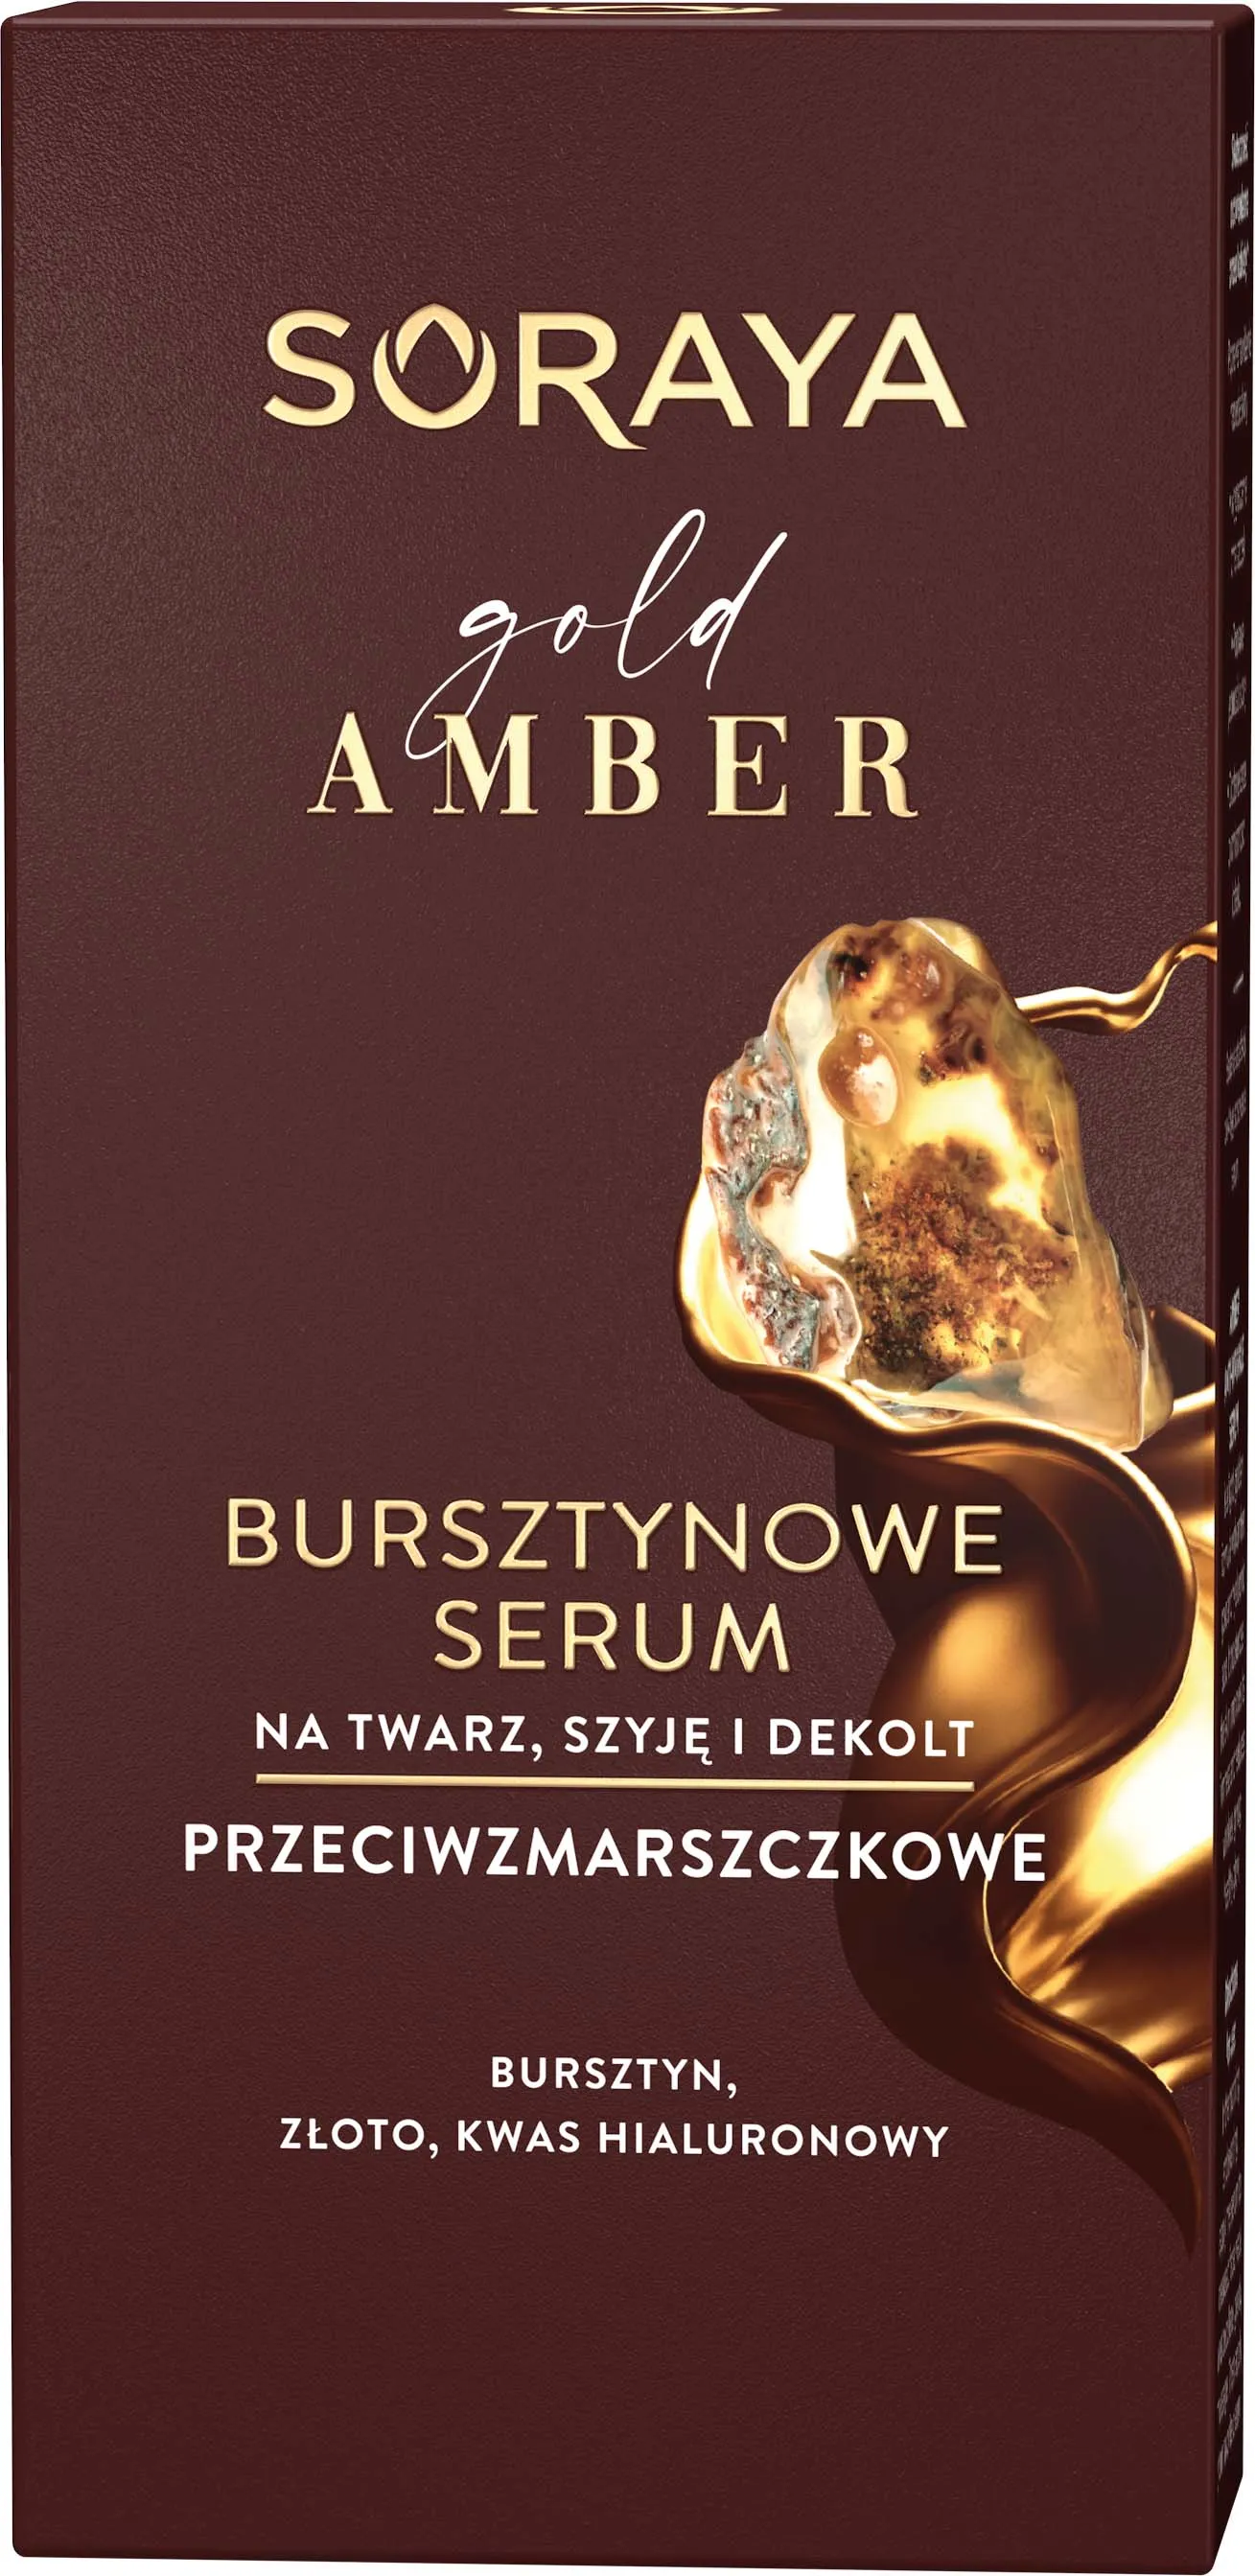 Soraya Gold Amber bursztynowe serum przeciwzmarszczkowe, 30 ml